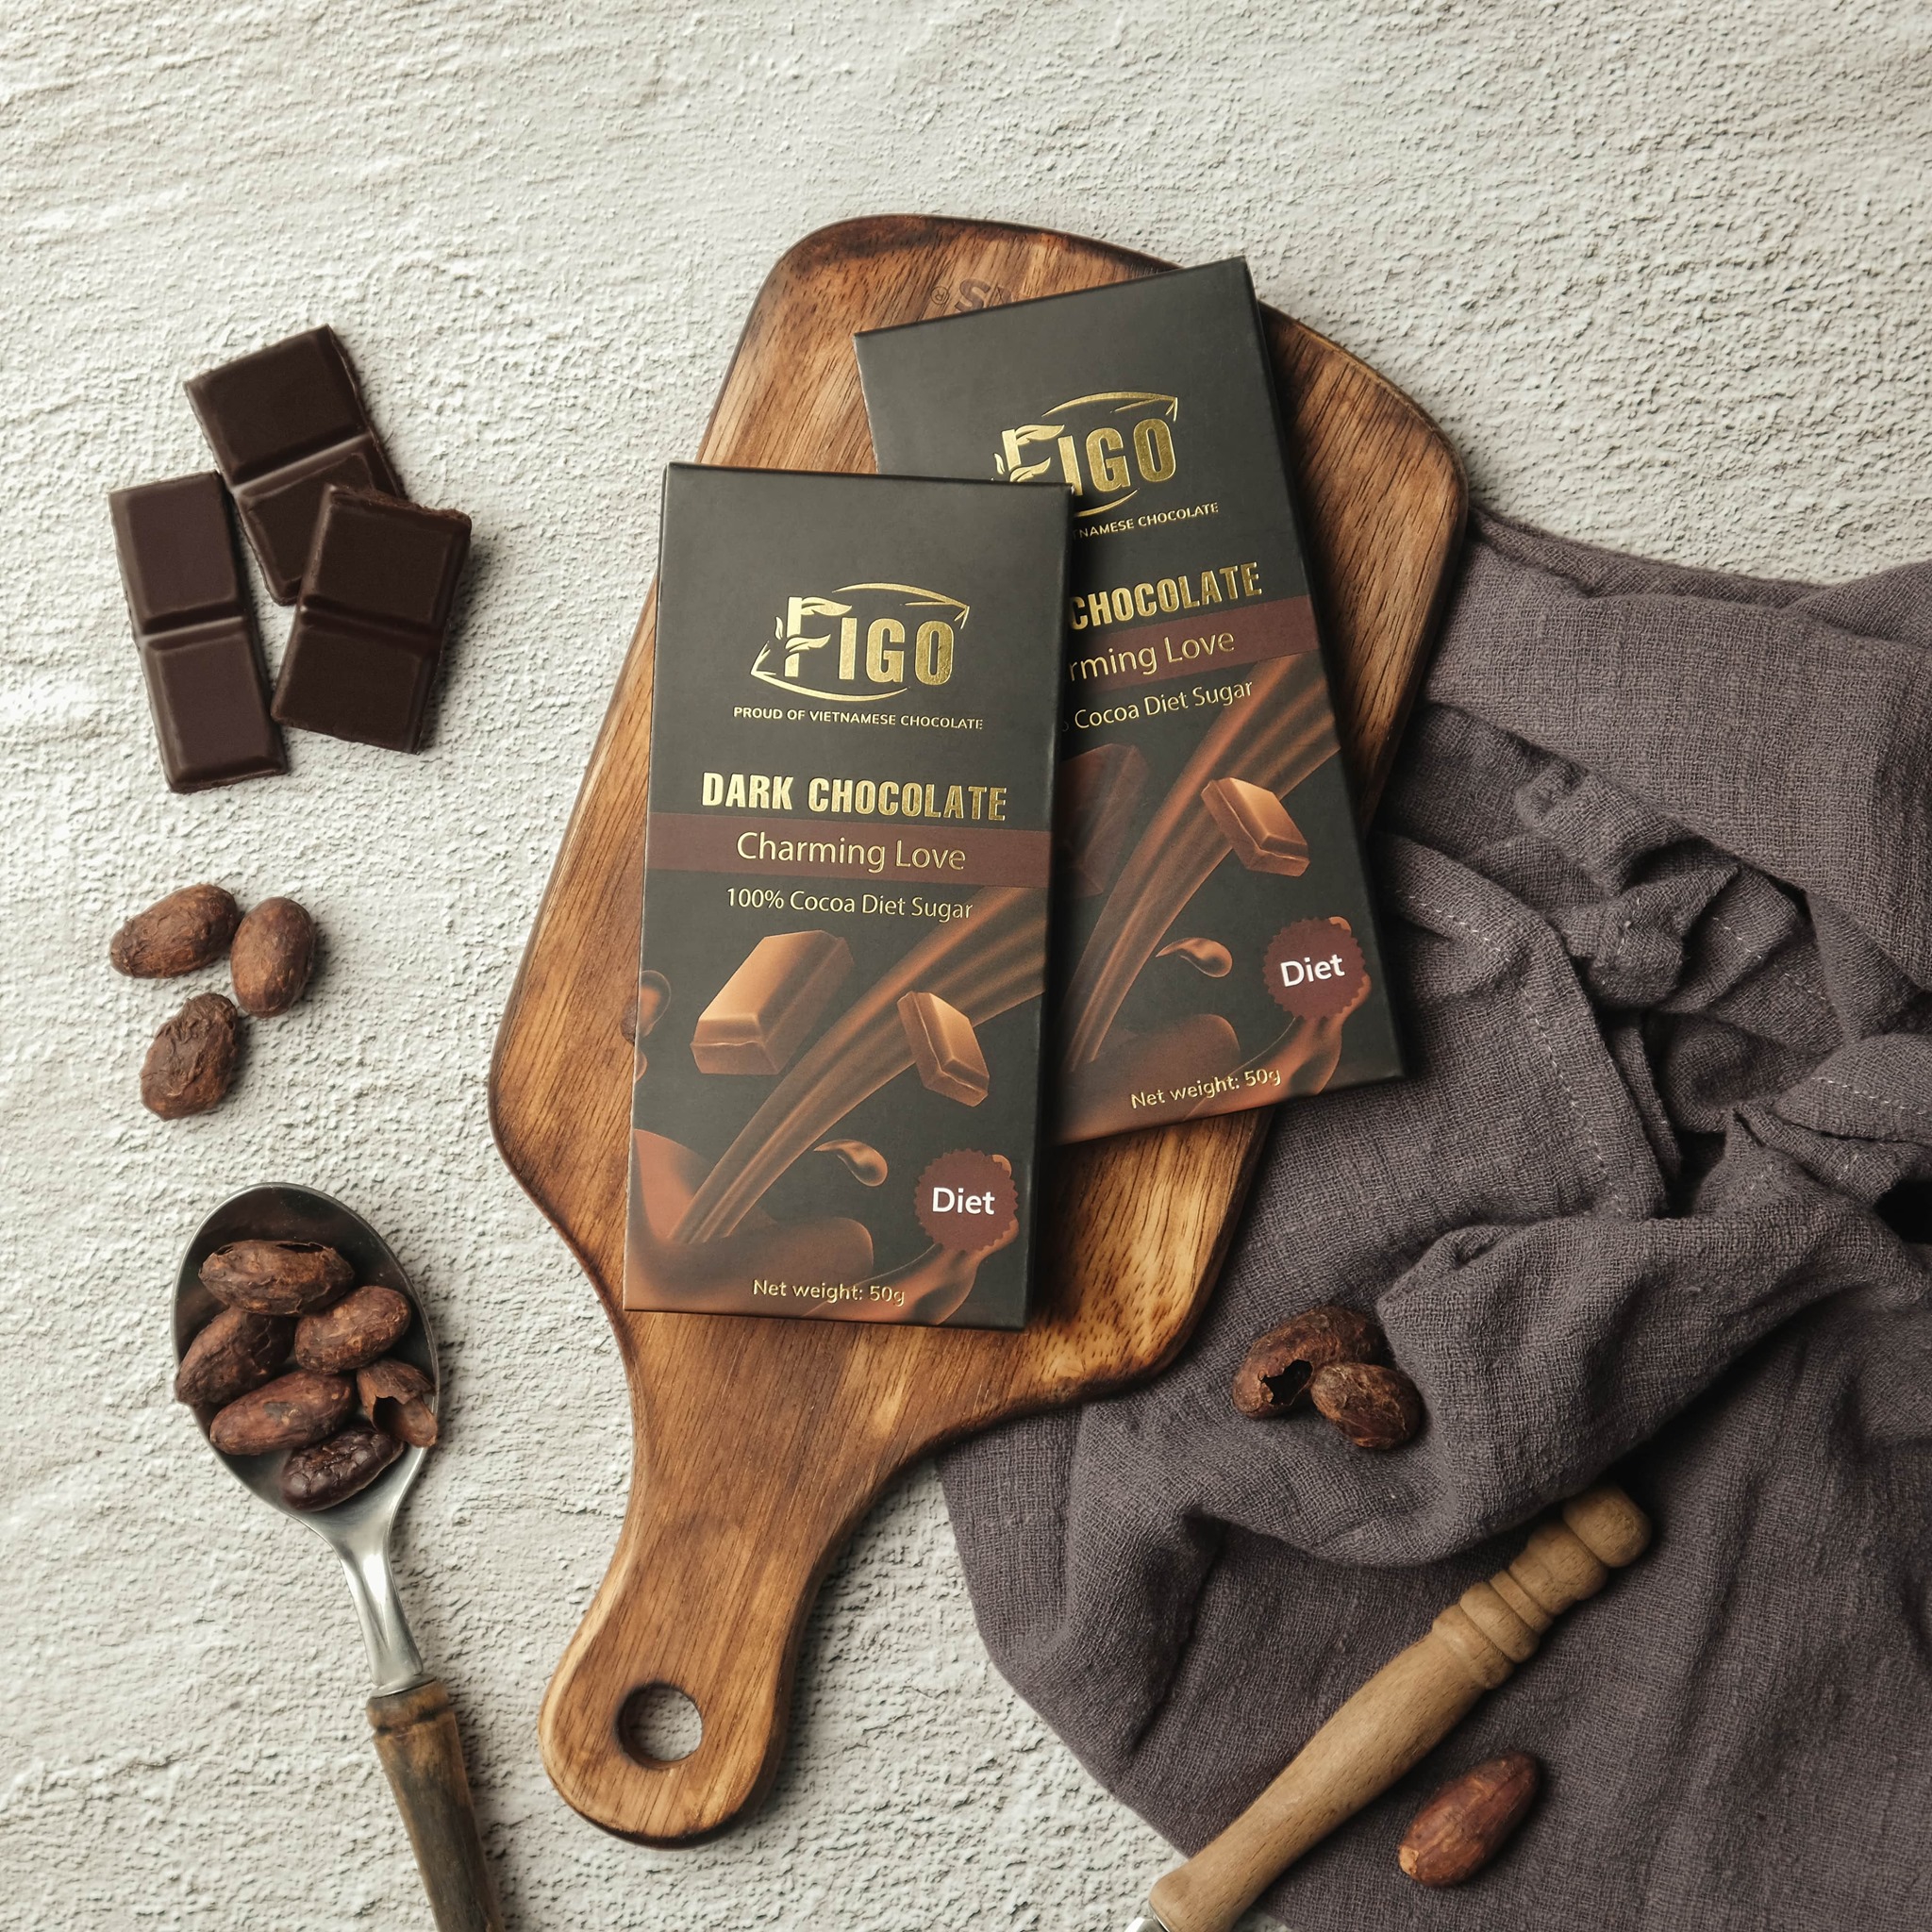 Socola đen thanh 100% cacao có đường ăn kiêng, giảm cân 50gram Figo - Dành cho khách hàng có chế độ keto